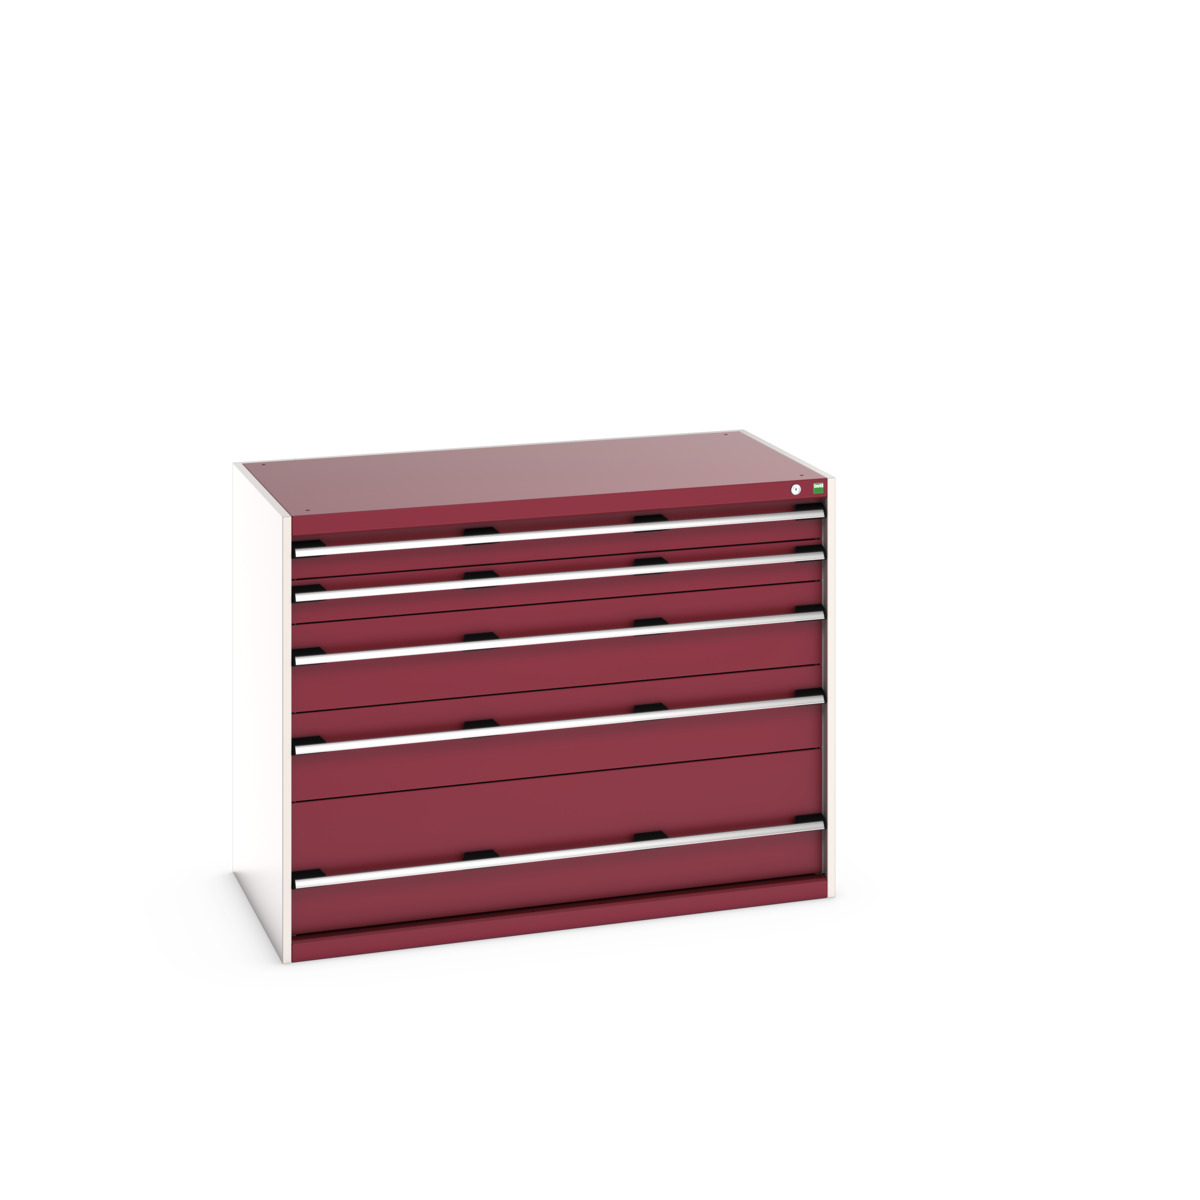 40030092.24V - cubio drawer cabinet